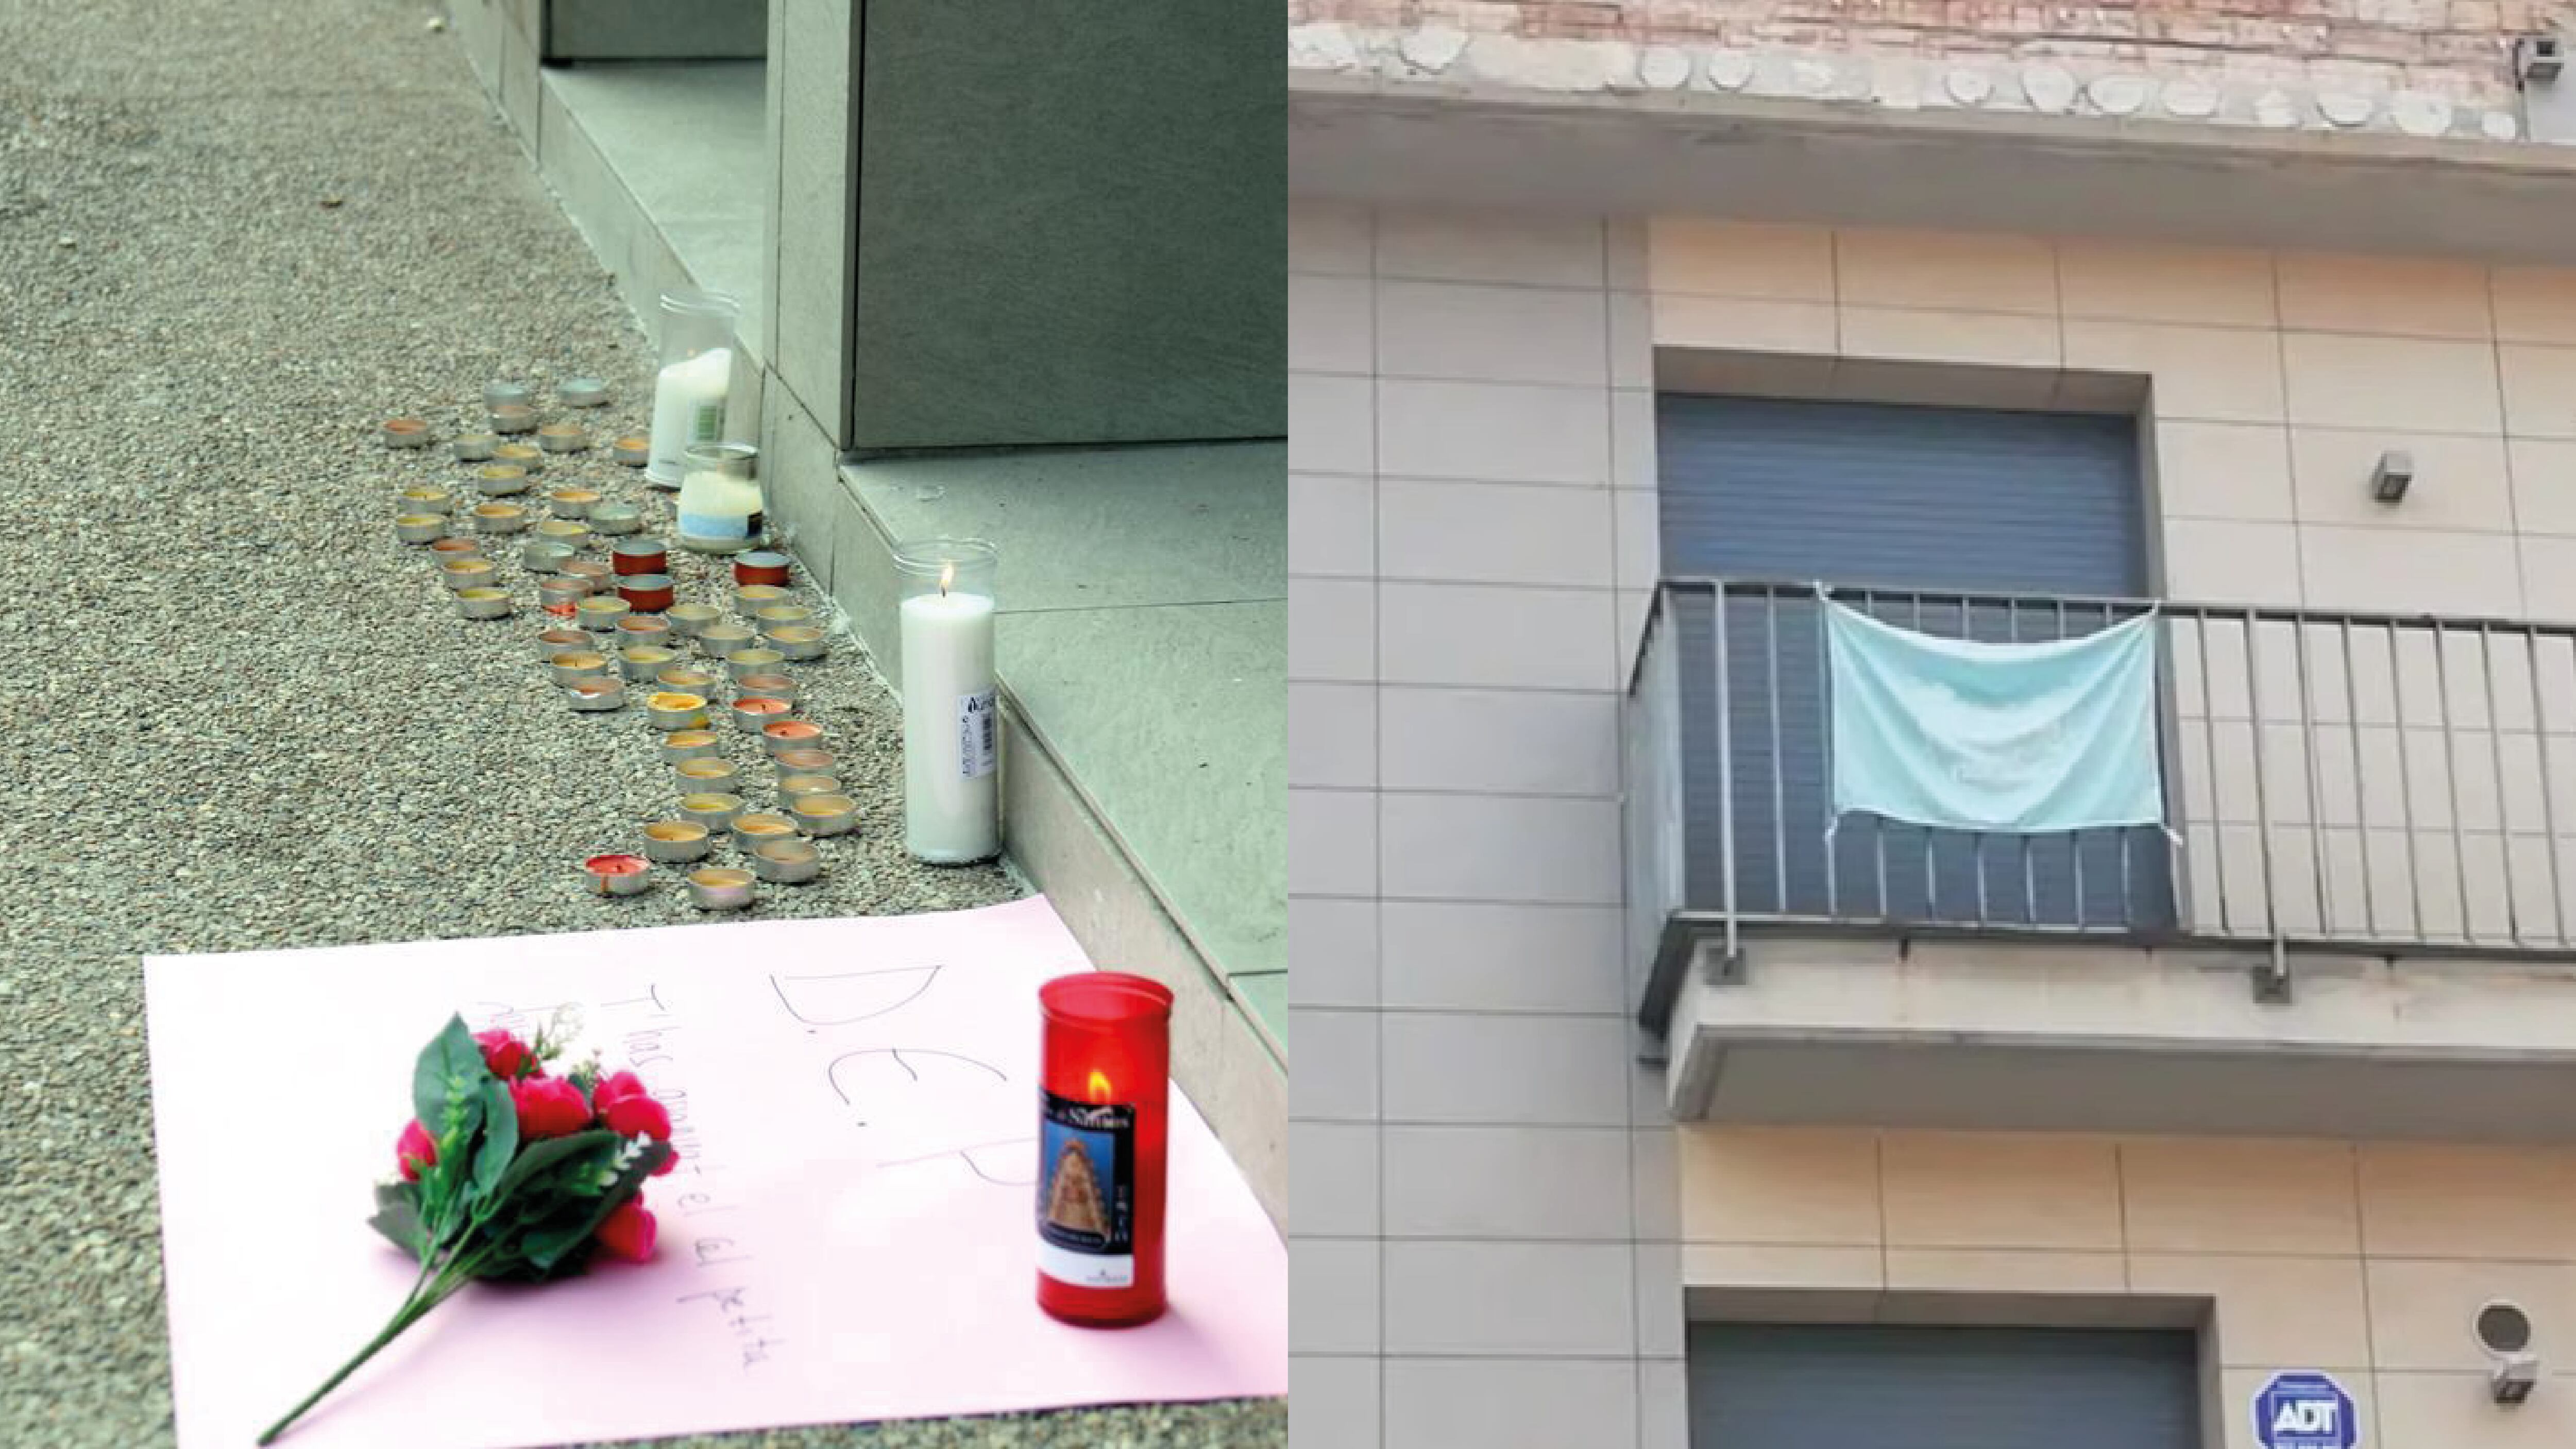 Conmoción en España: Gemelas de 12 años saltaron desde un tercer piso dejando cartas escritas a mano